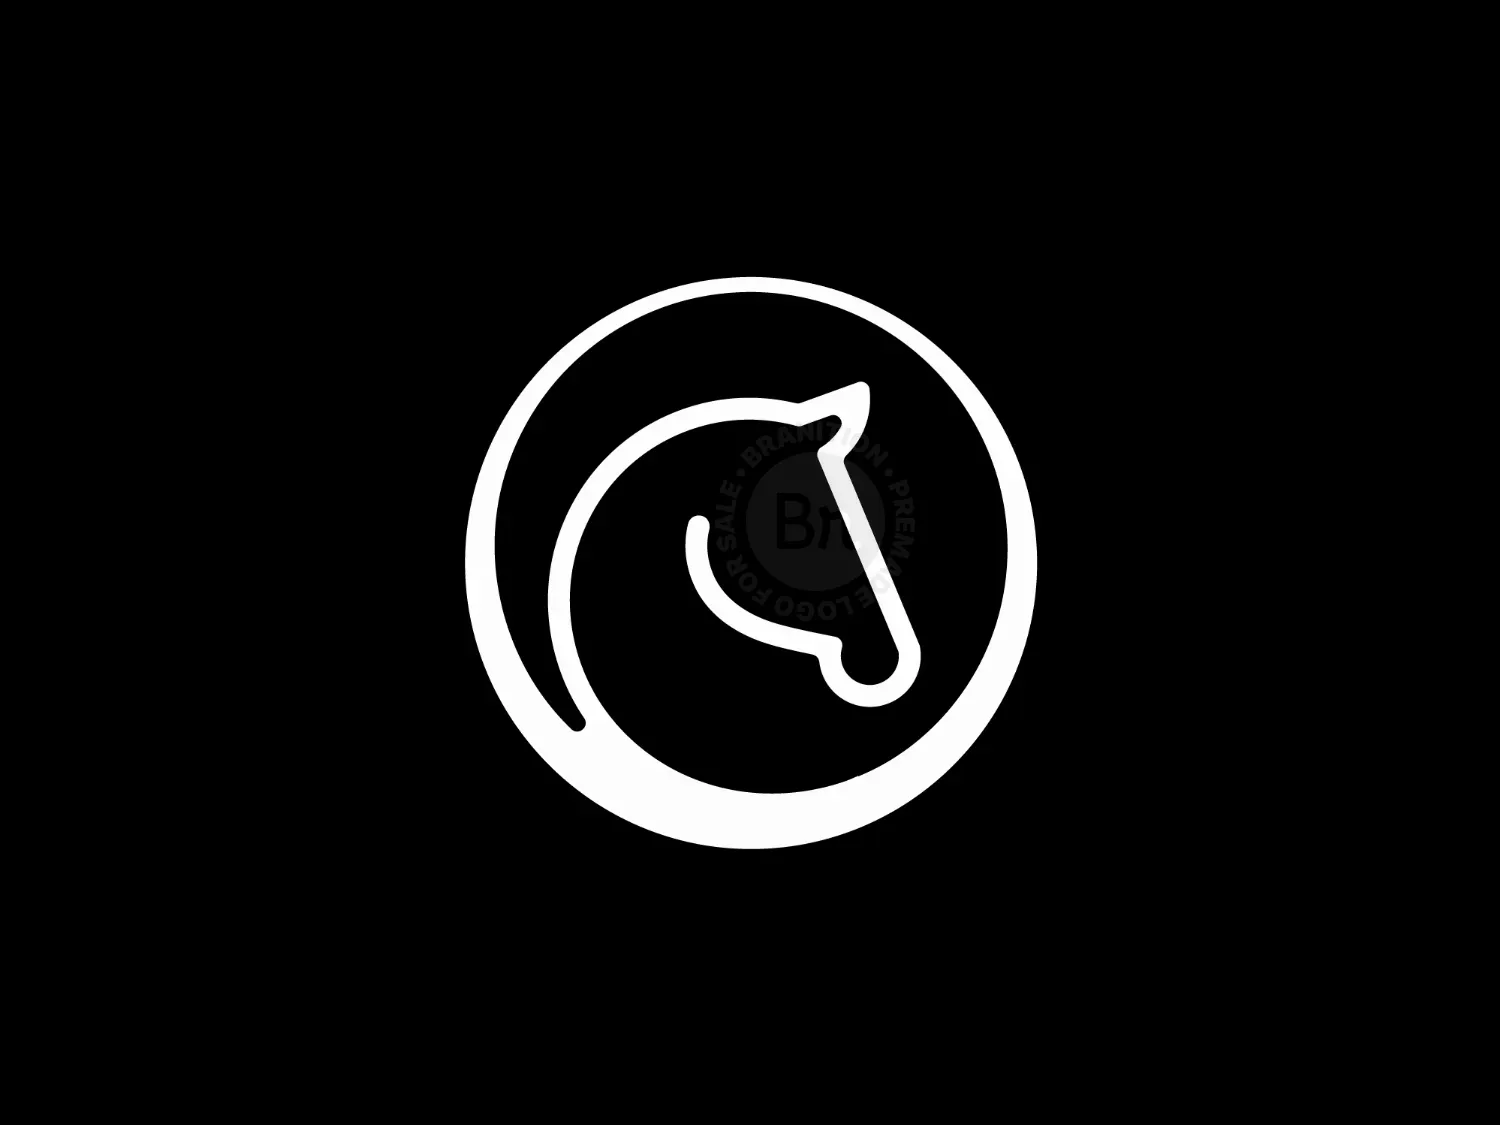 Black Horse Logo PNG Transparent Images Free Download | Vector Files |  Pngtree